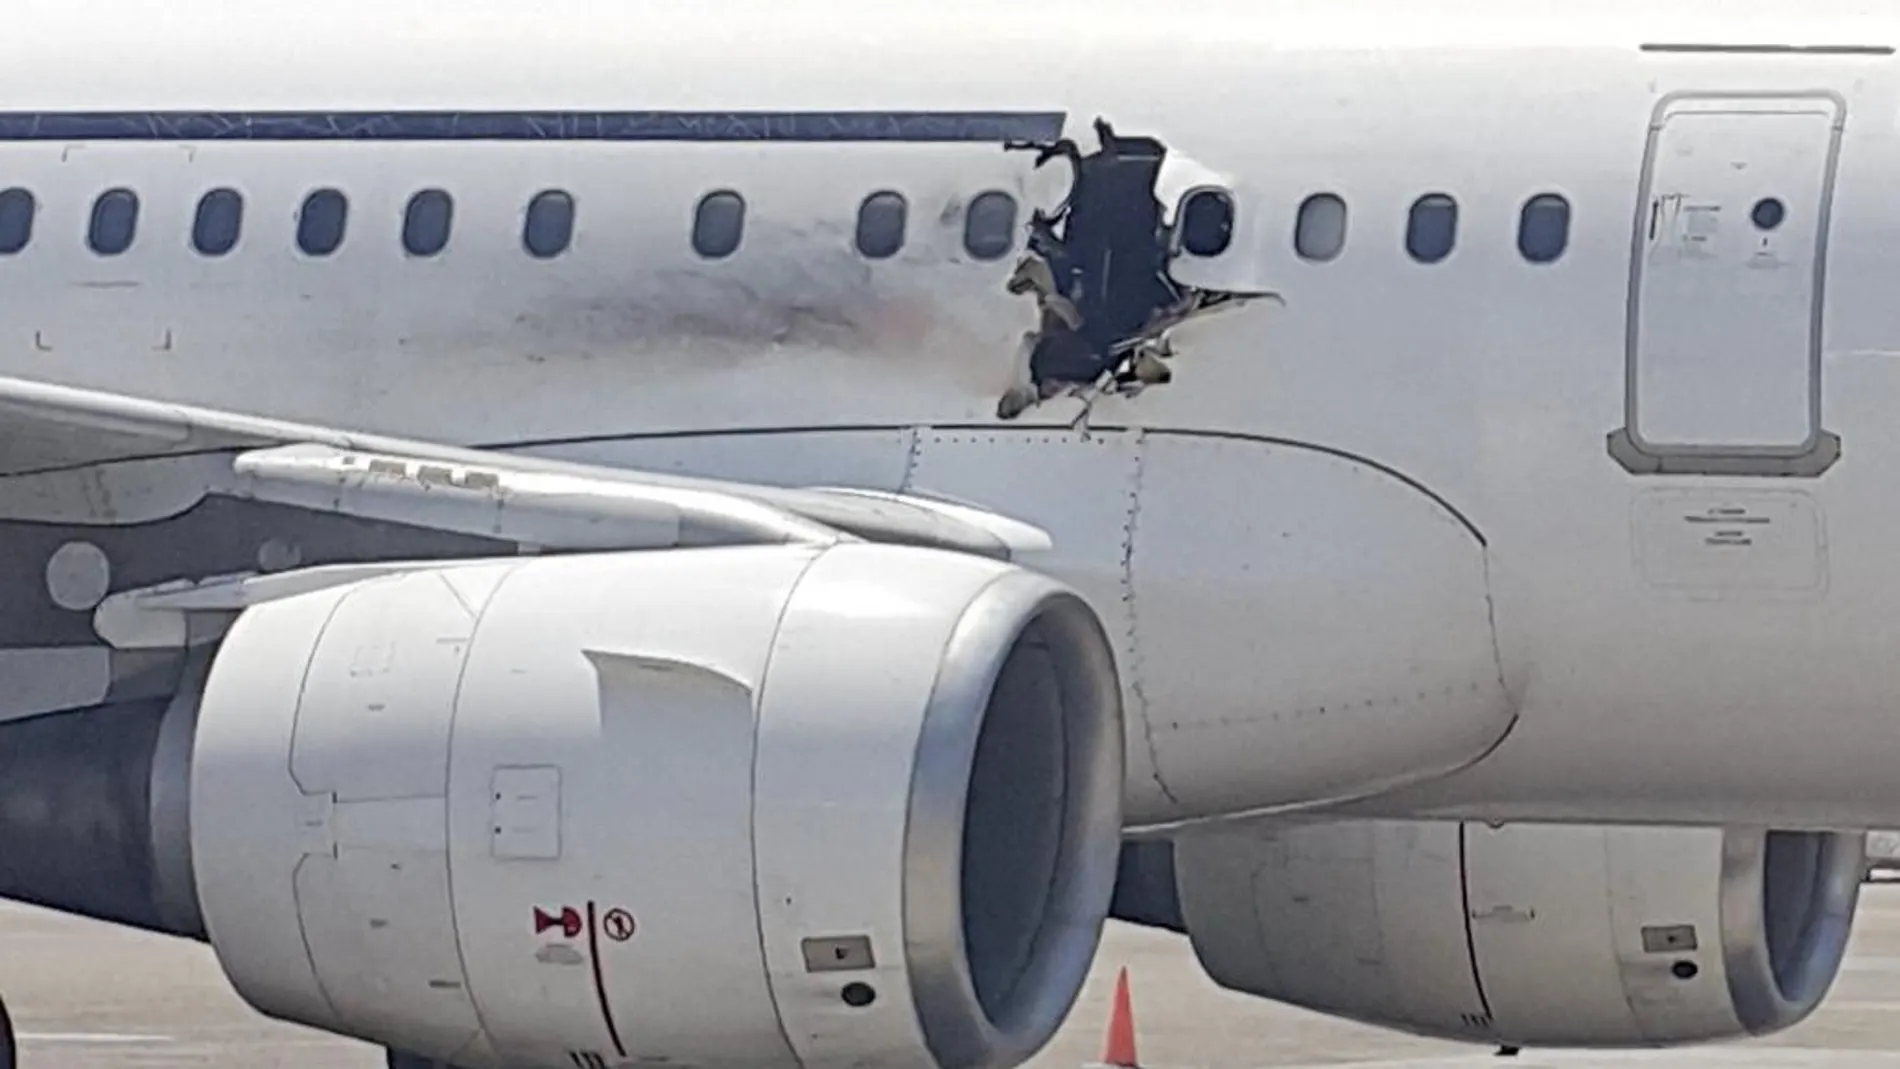 Imagen del avión de Daallo Airlines en la pista de aterrizaje en la que se ve el estado en que quedó el fuselaje tras la explosión